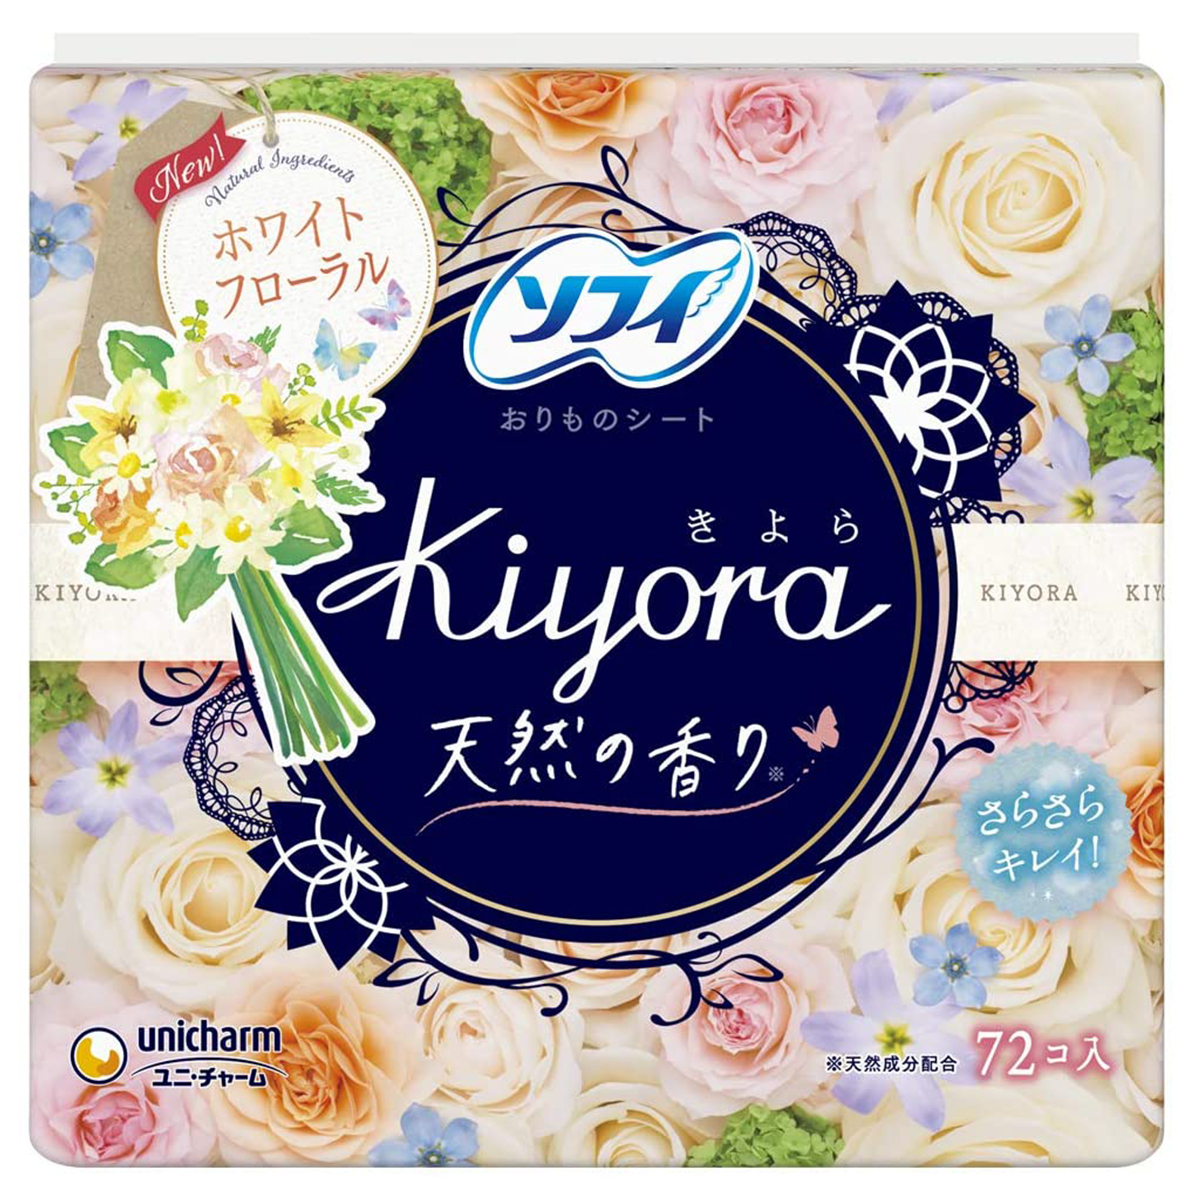 unicharm ソフィ Kiyora フレグランス Happy Floral 清楚なホワイトフローラルの香り 72コ入り×1コ ソフィ（ユニ・チャーム） おりものシートの商品画像